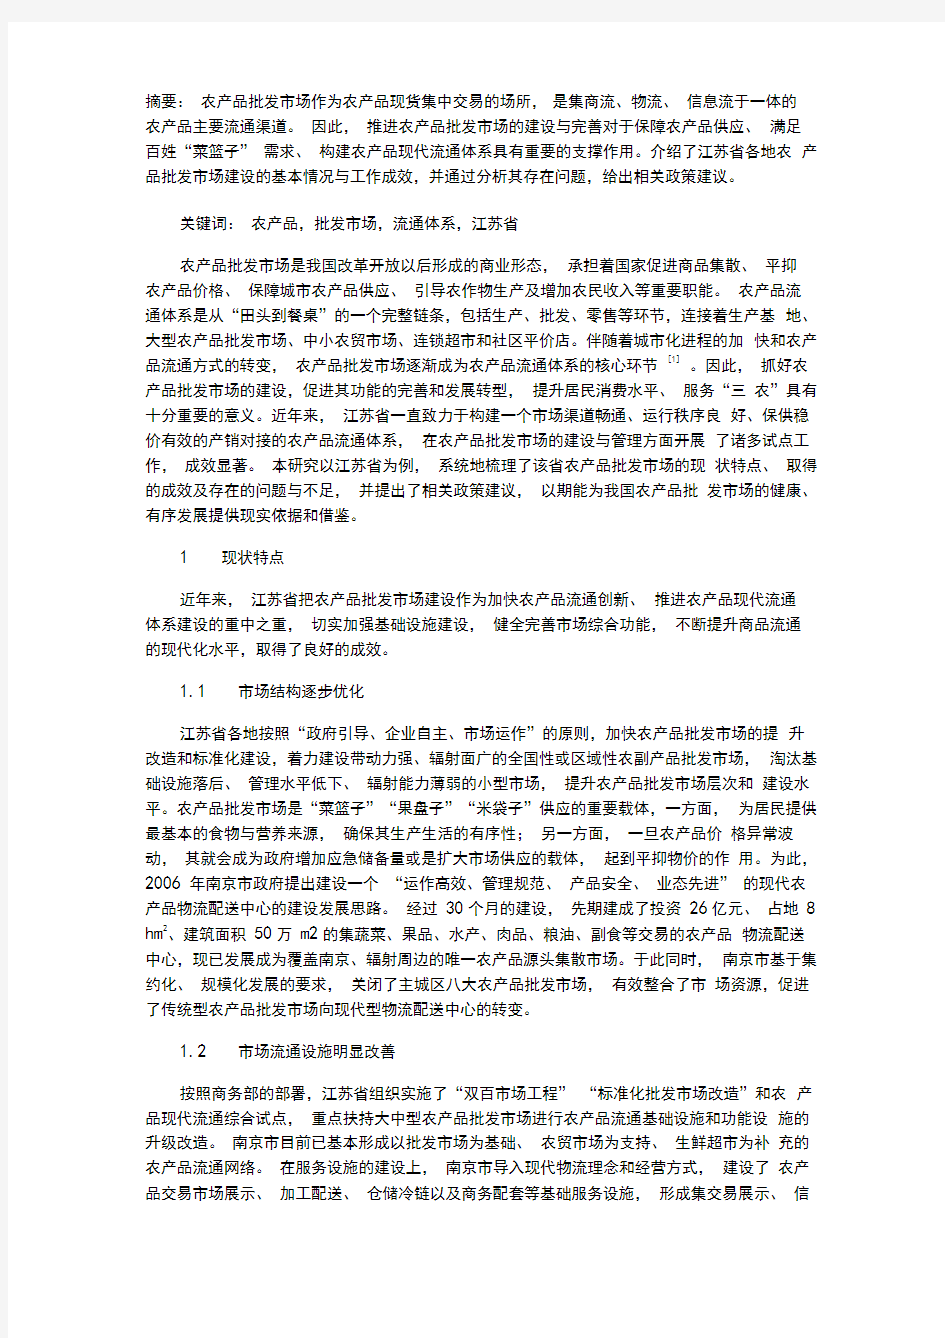 江苏省农产品批发市场建设现状及建议